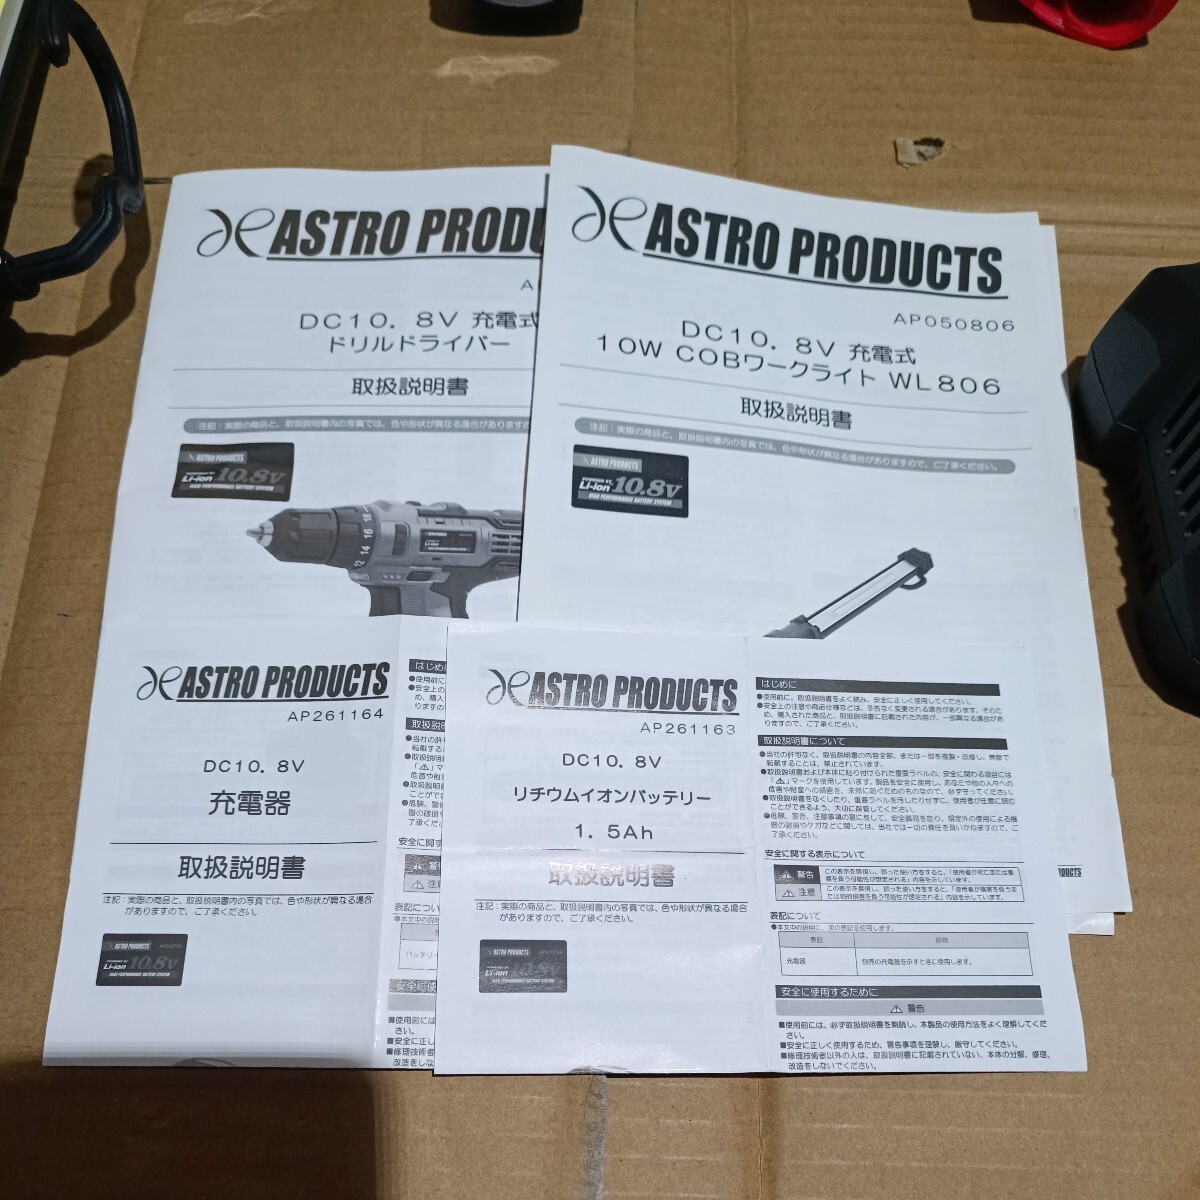  Astro Pro daktsu10.8V дрель-шуруповерт рабочее освещение зарядное устройство в комплекте 